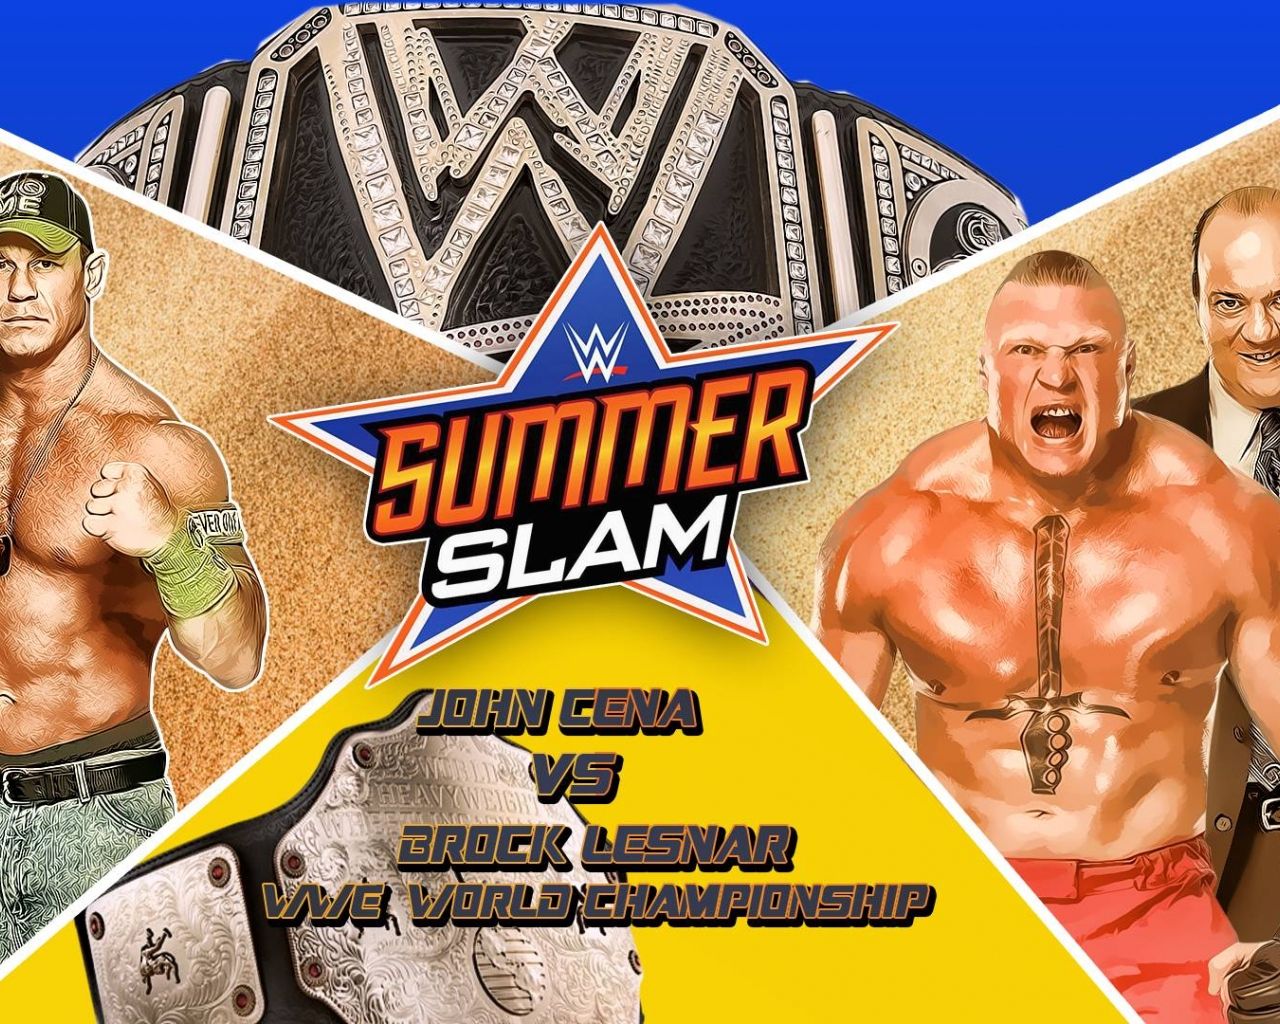 Free download WWE Summerslam 2015 John Cena Vs Brock Lesnar